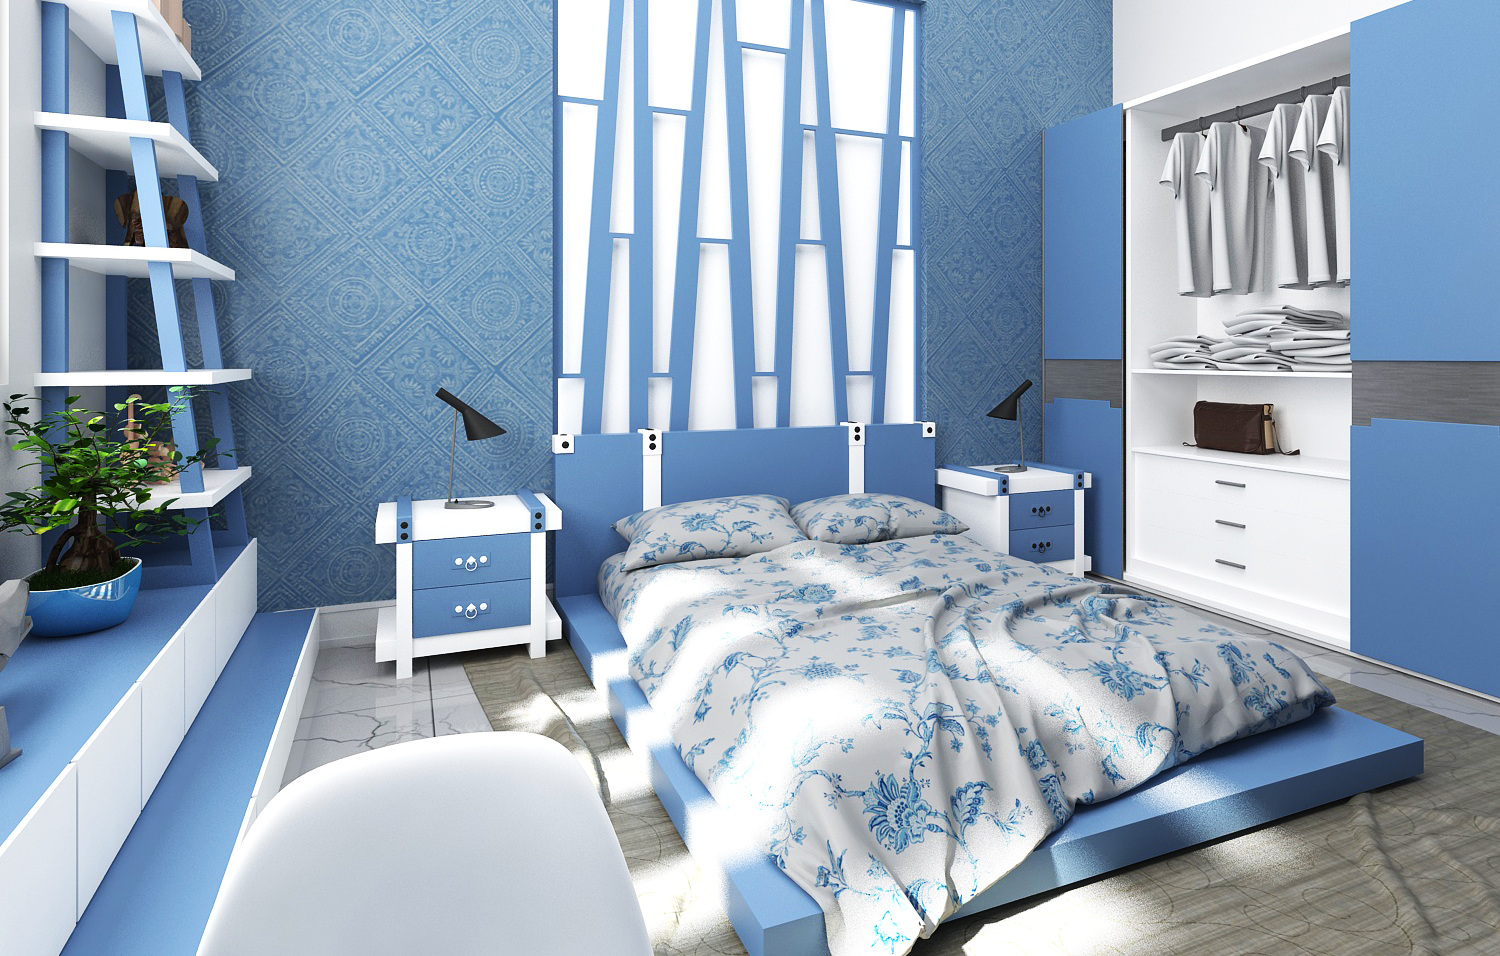 Phòng ngủ cho bé thường được sử dụng những màu sắc tươi tắn